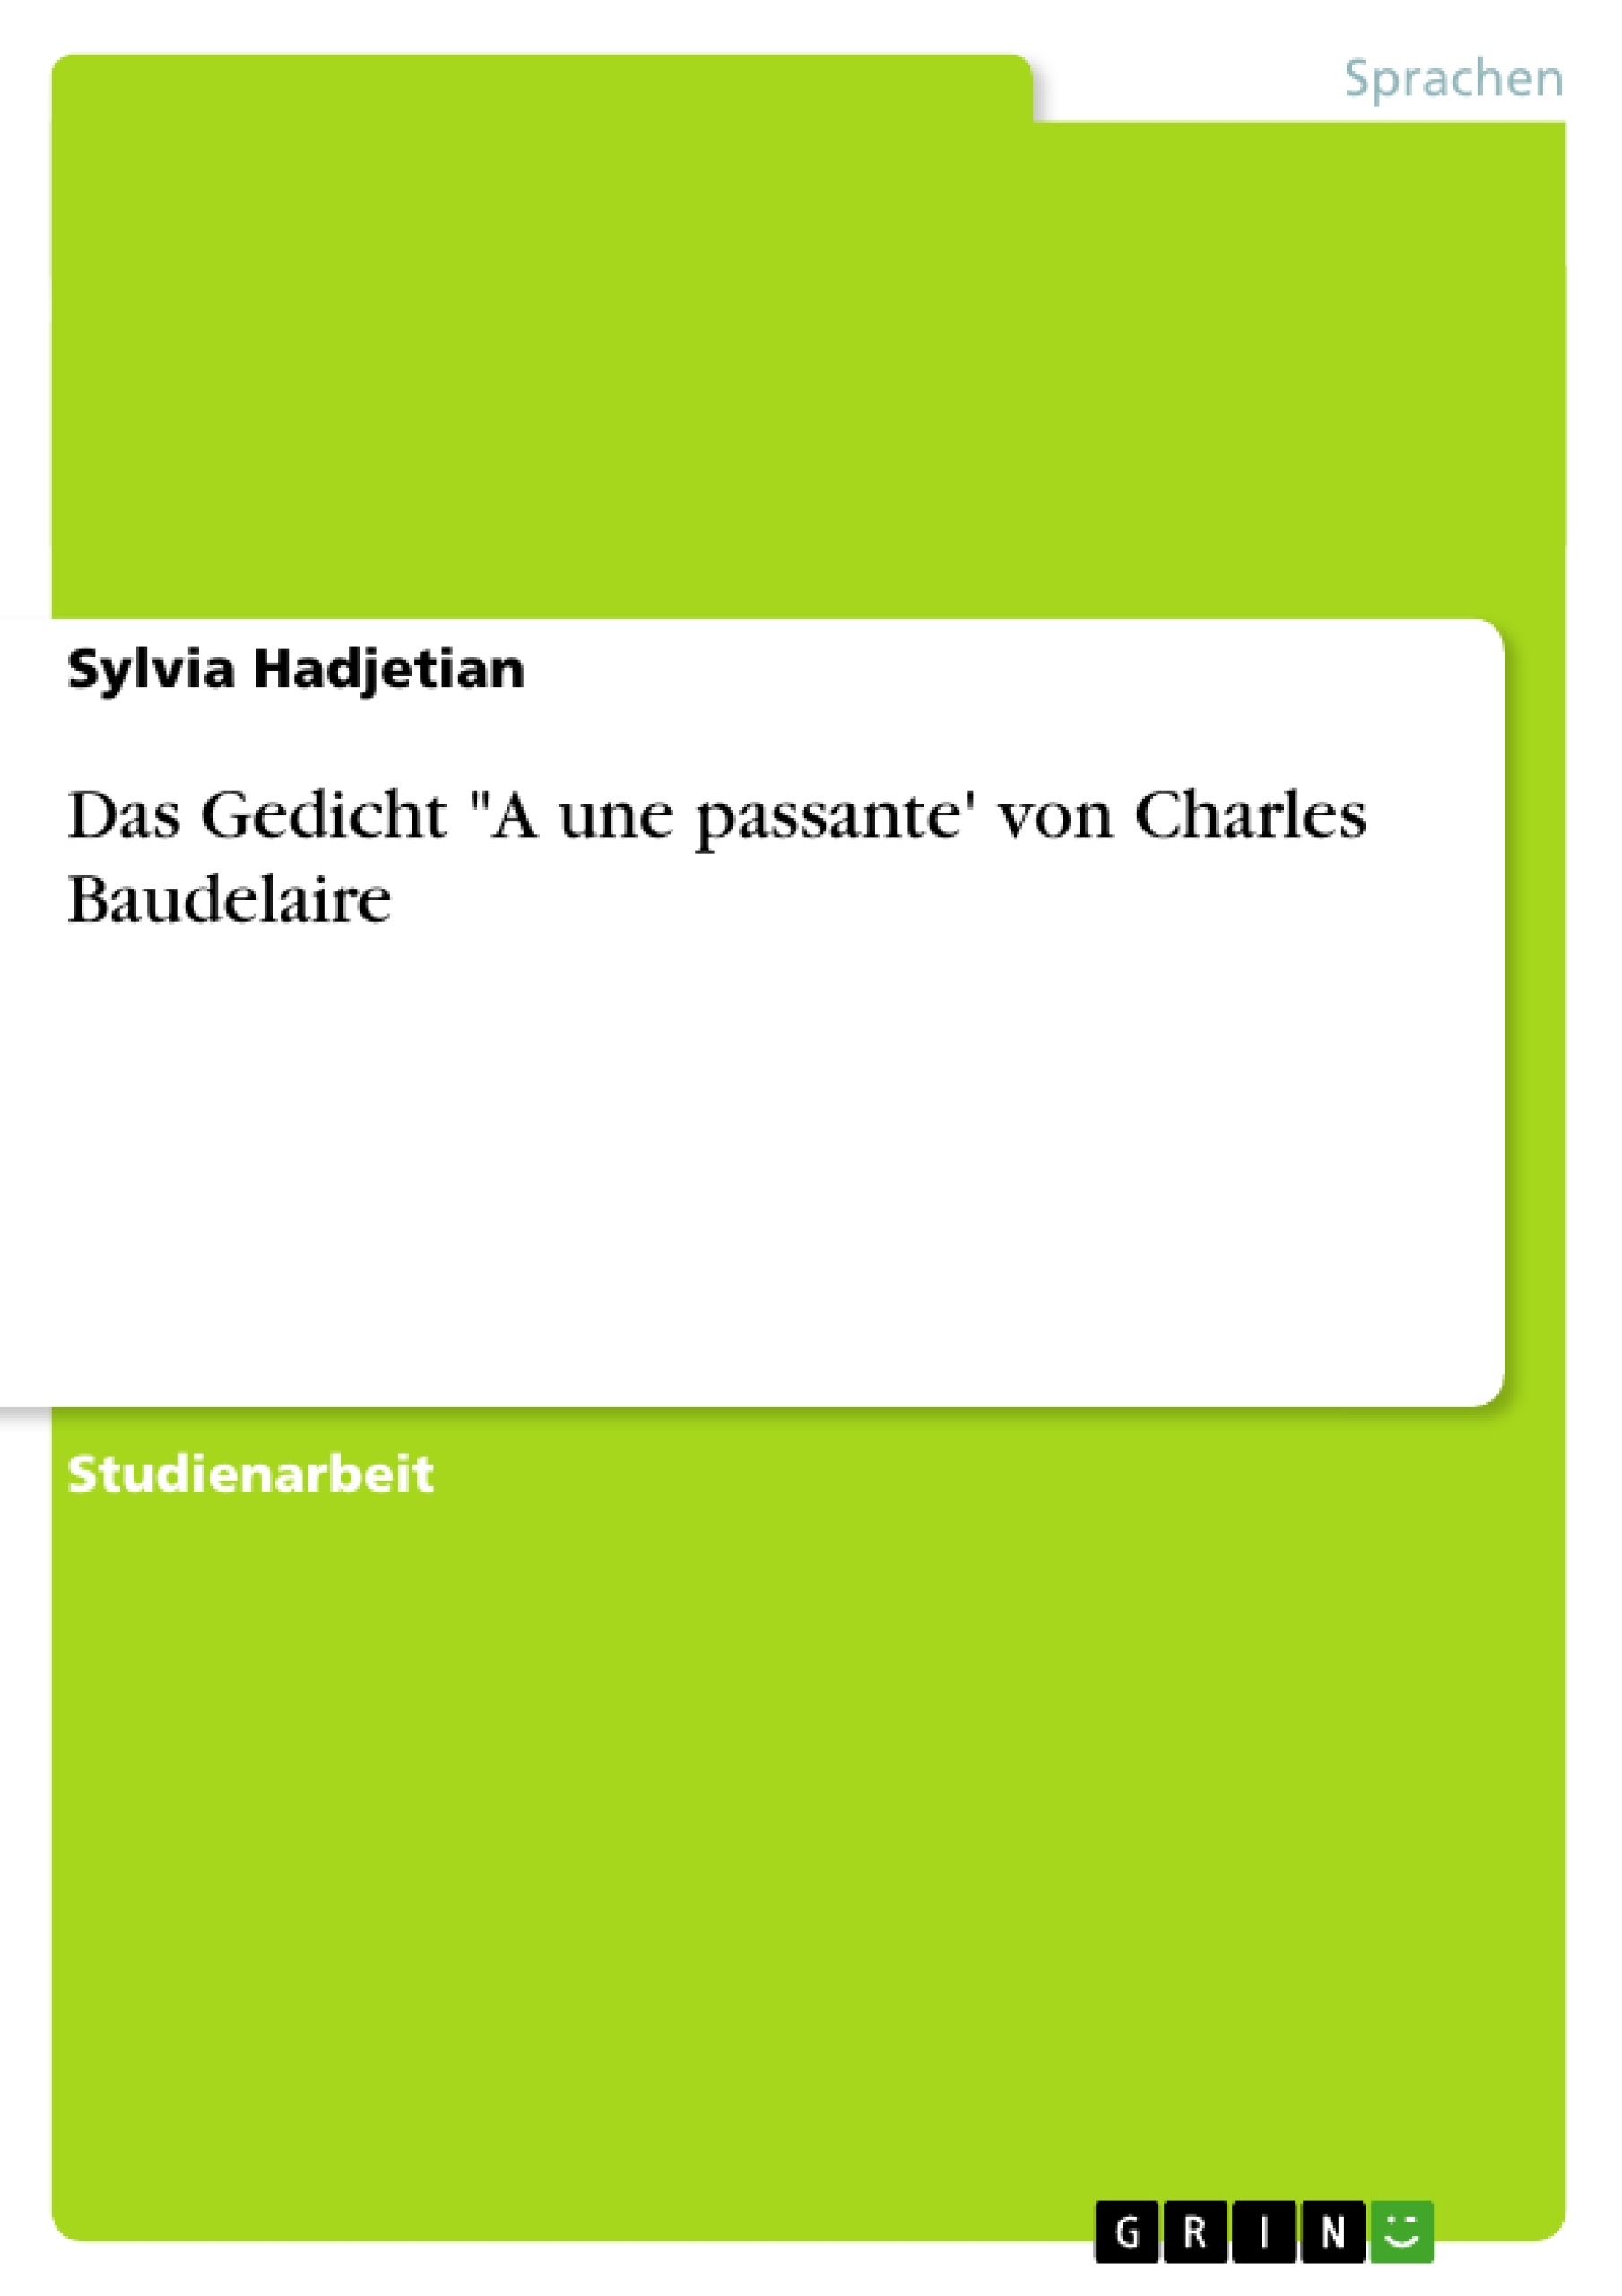 Título: Das Gedicht "A une passante' von Charles Baudelaire